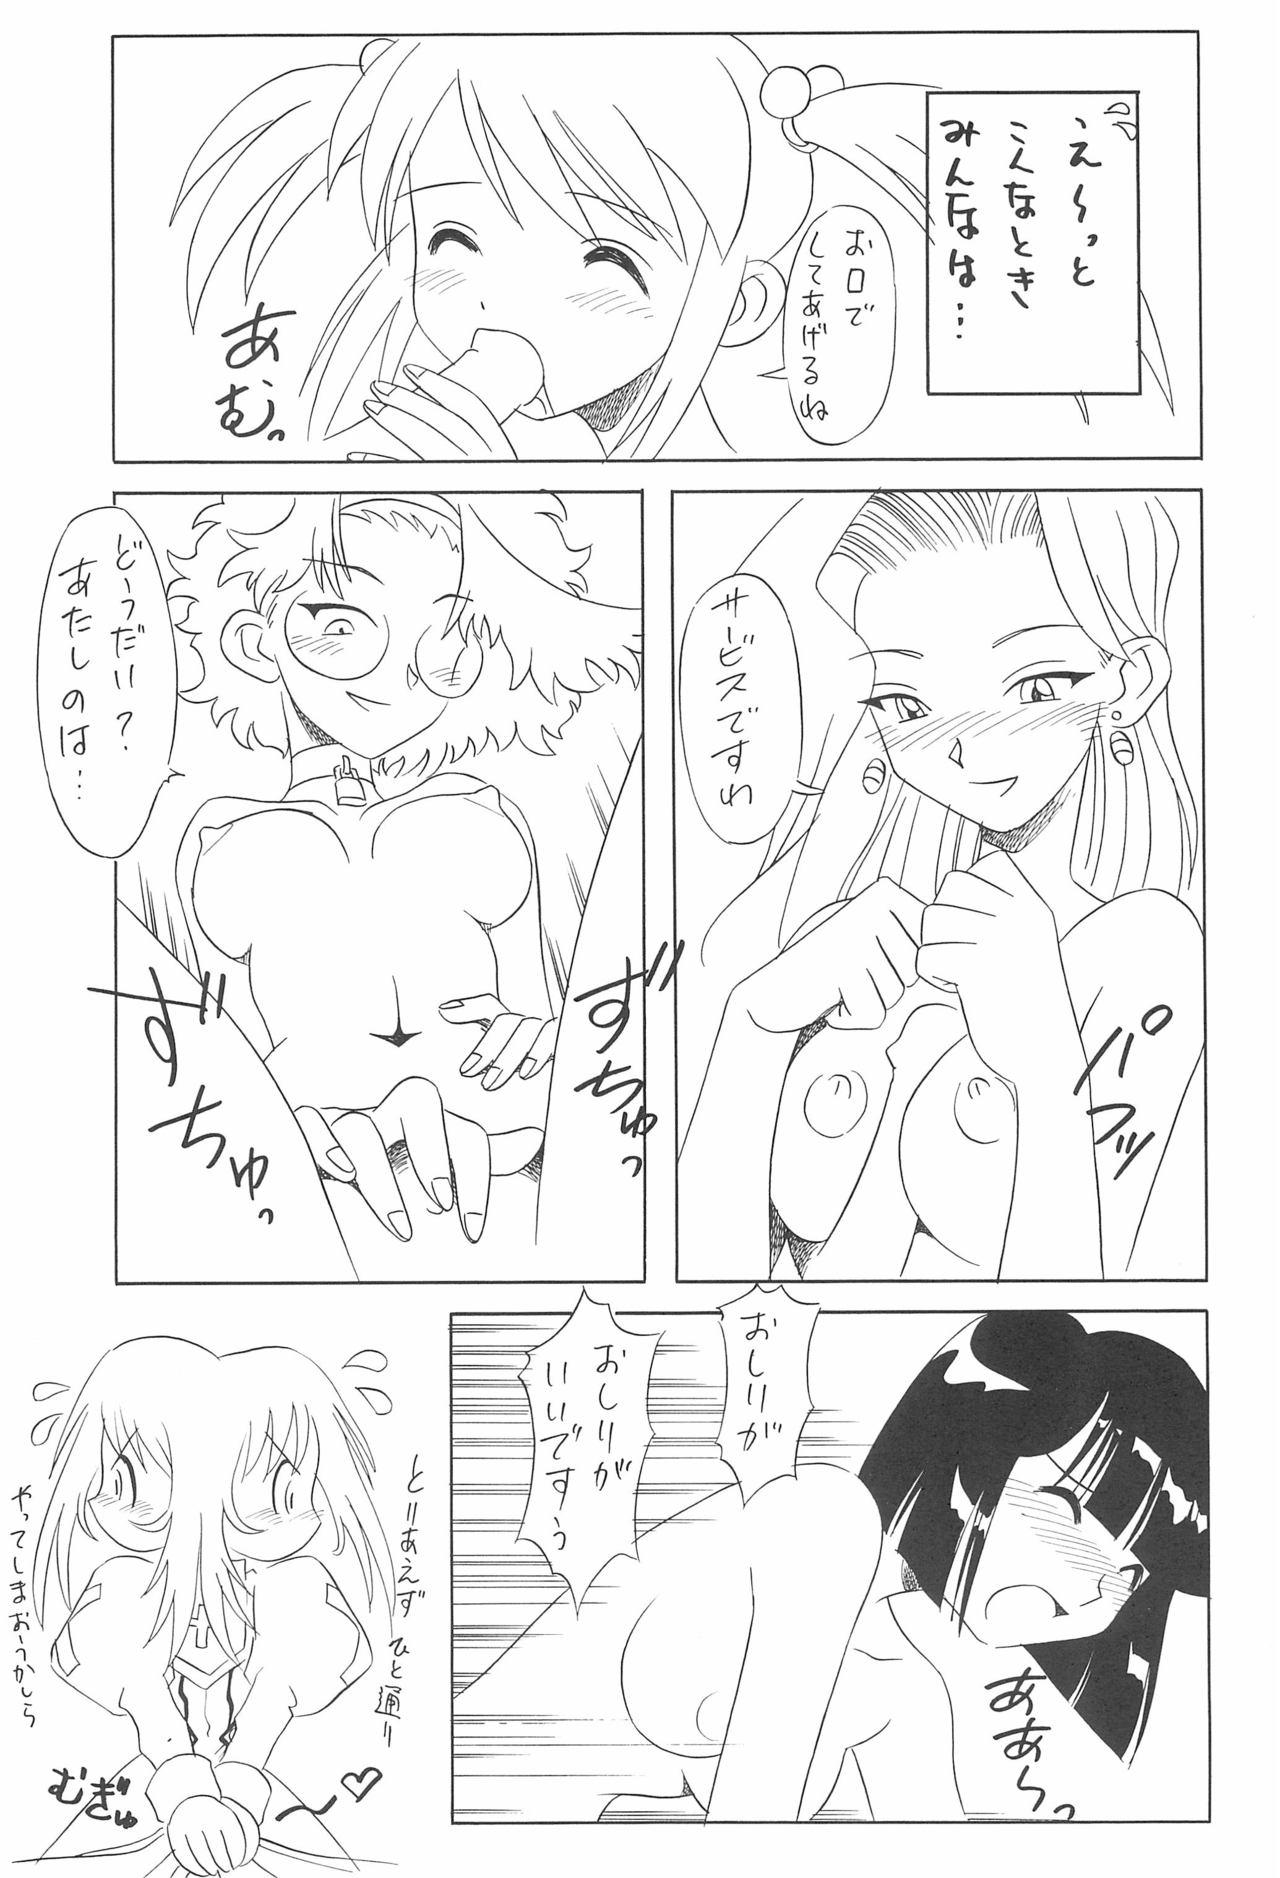 Bro Hana-dayori - Sakura taisen Fantasy - Page 9